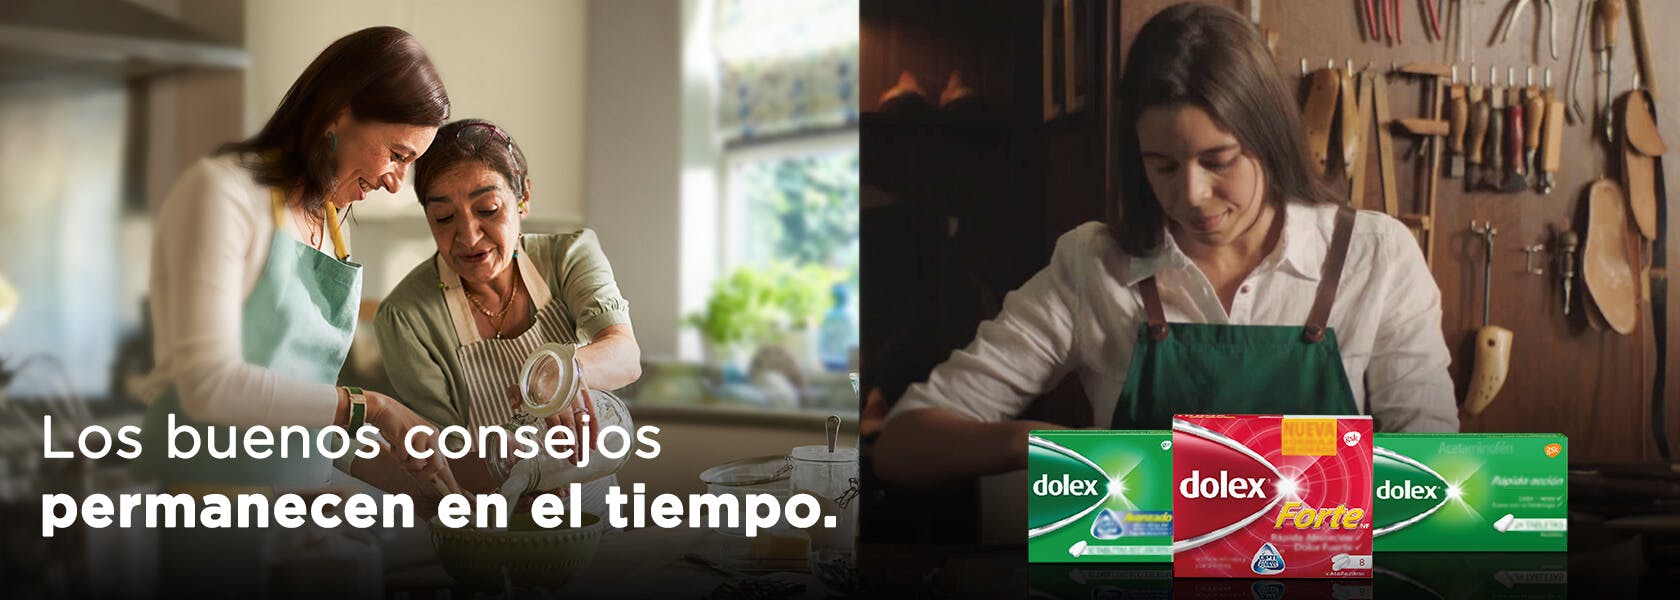 Mamá e hija cocinando | productos Dolex - Dolex Colombia